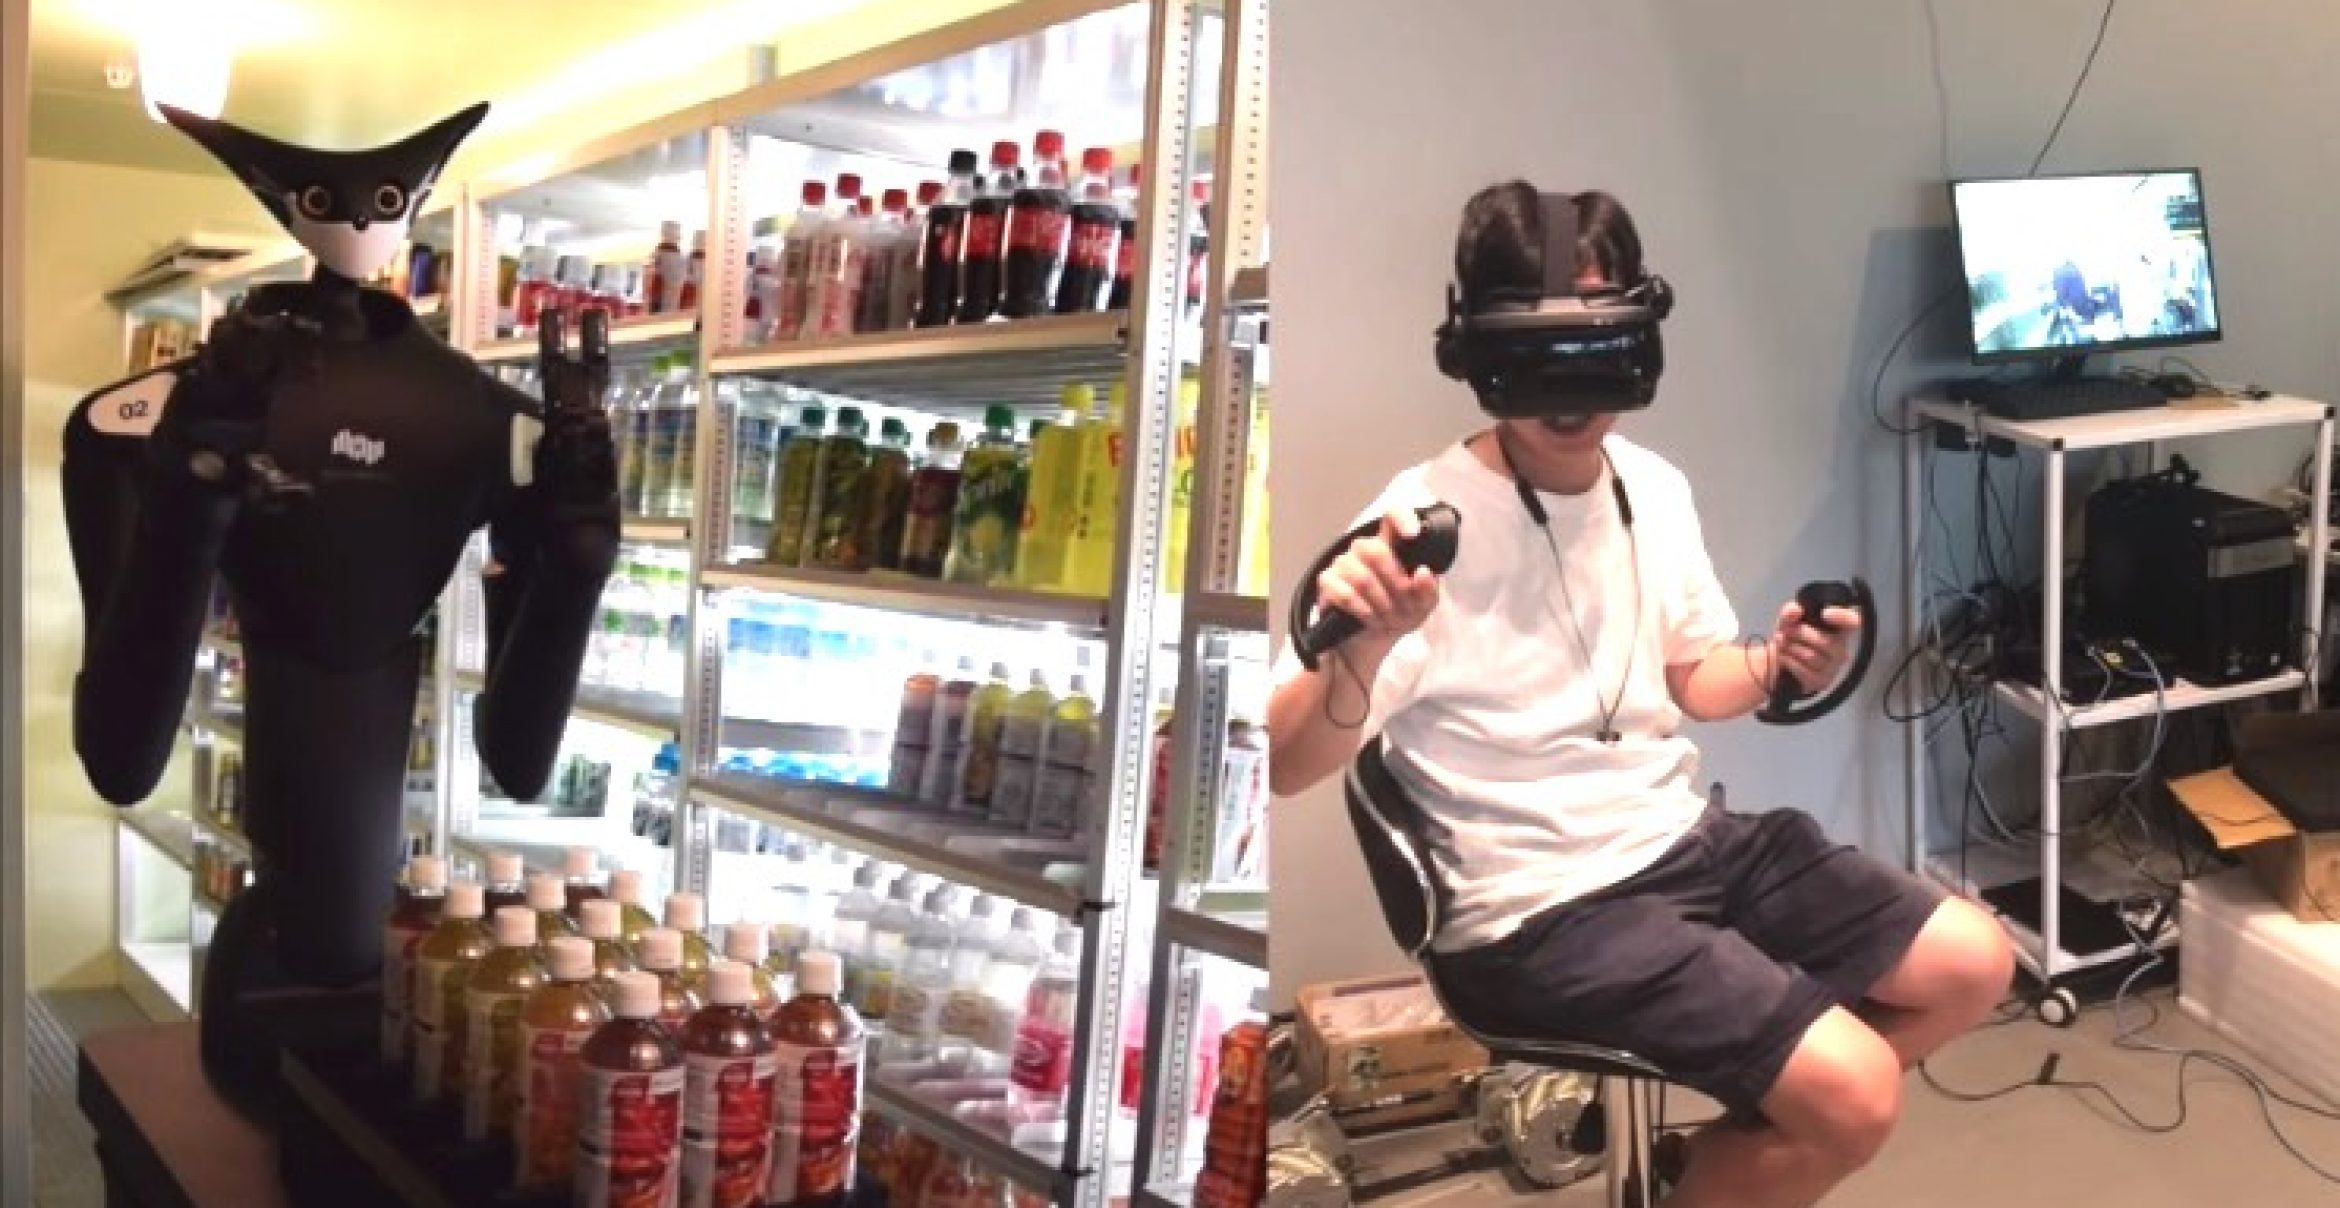 Steuerung via VR: In Supermärkten in Tokyo sollen Roboter die Regale einräumen